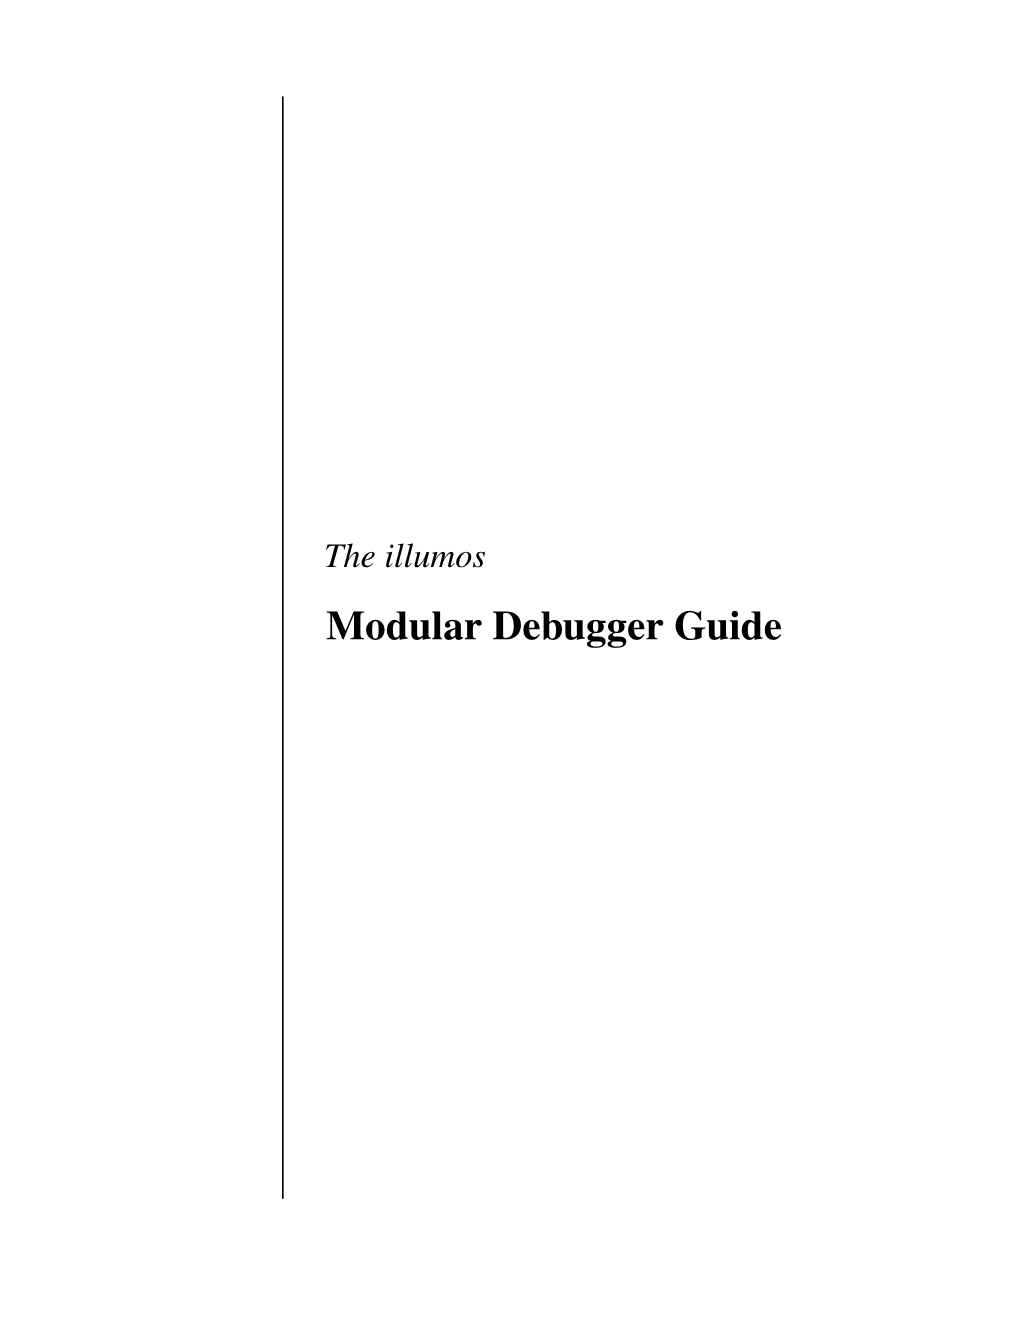 The Illumos Modular Debugger Guide Sun Microsystems, Inc